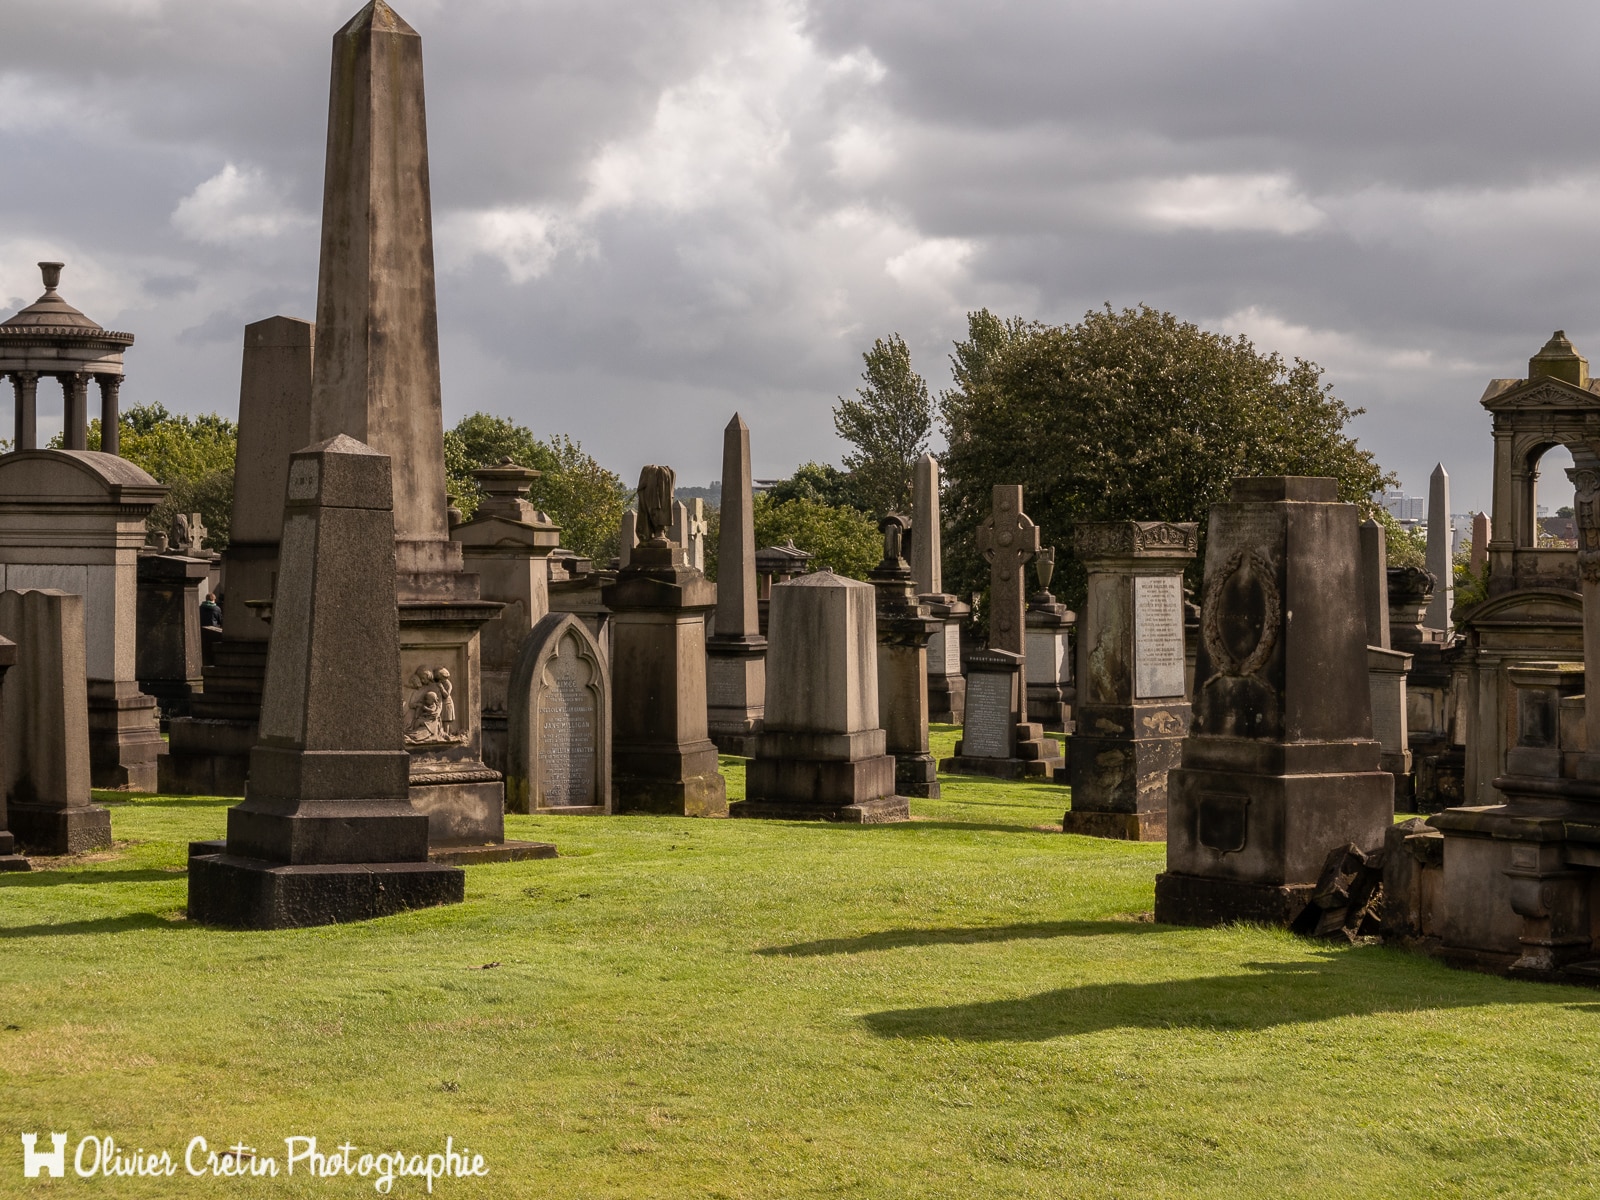 Ecosse - Glasgow - Glasgow Necropolis (plus classe que cimetière)